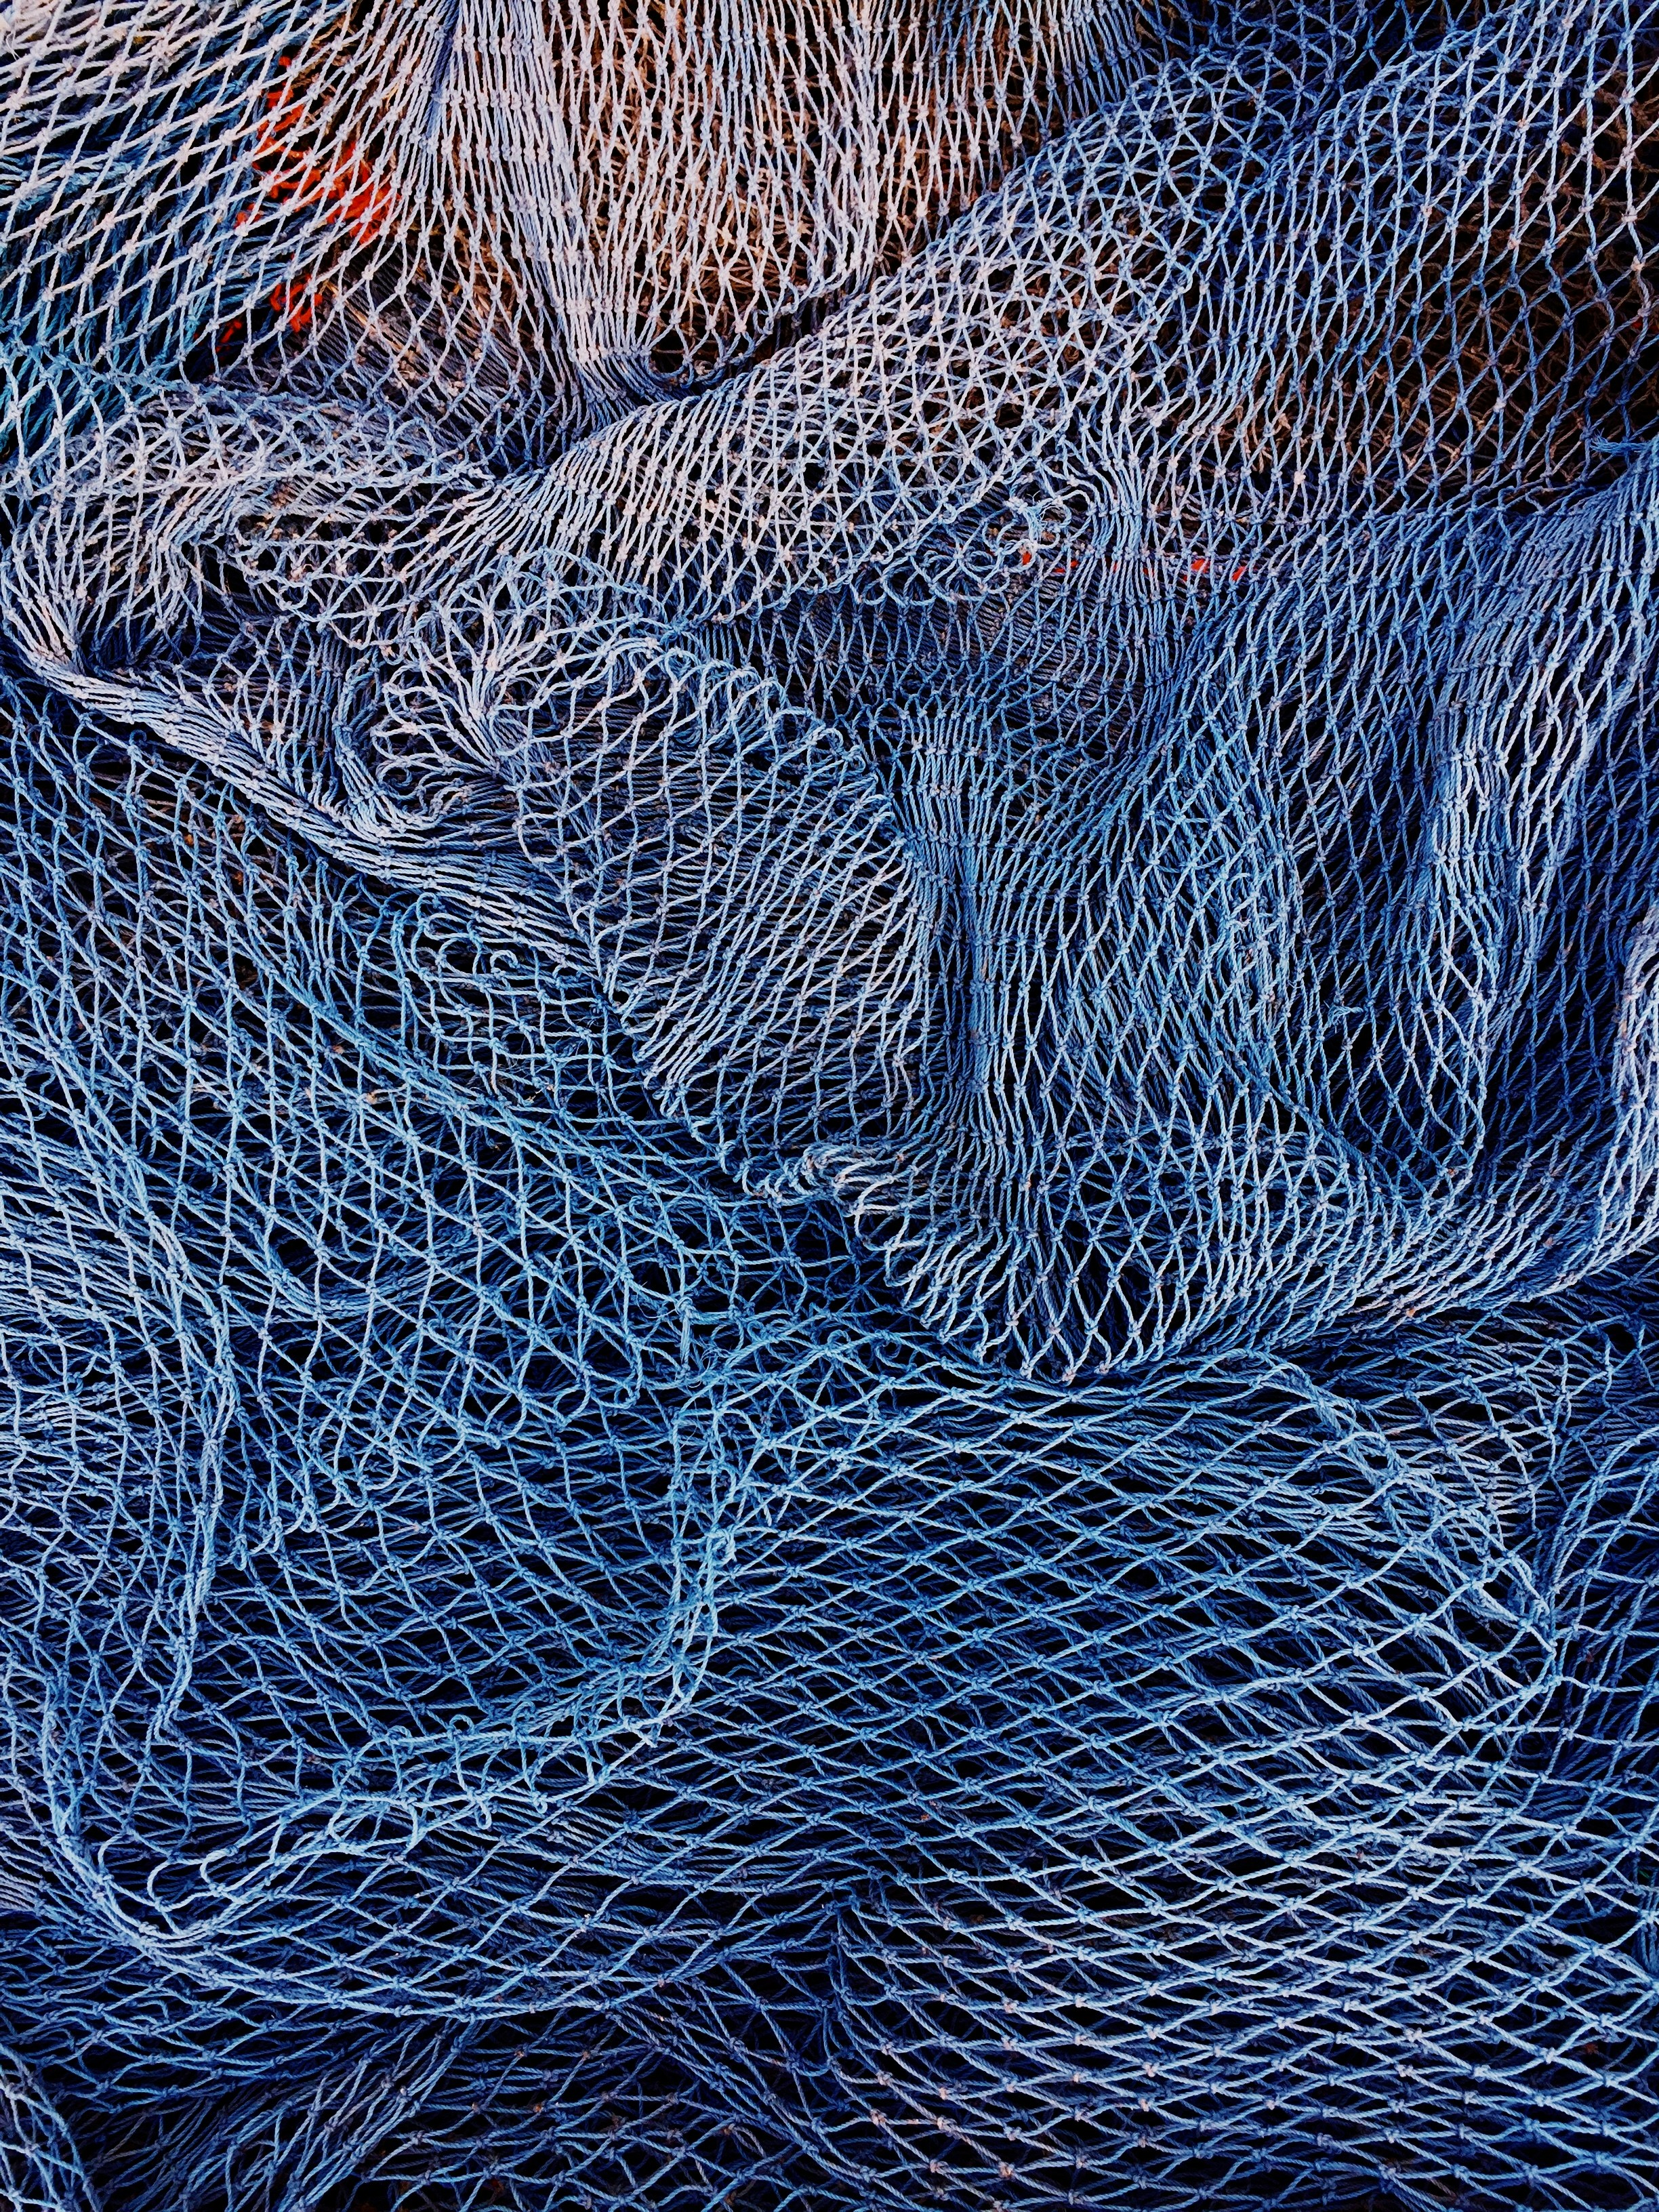 Fishing Net in early morning